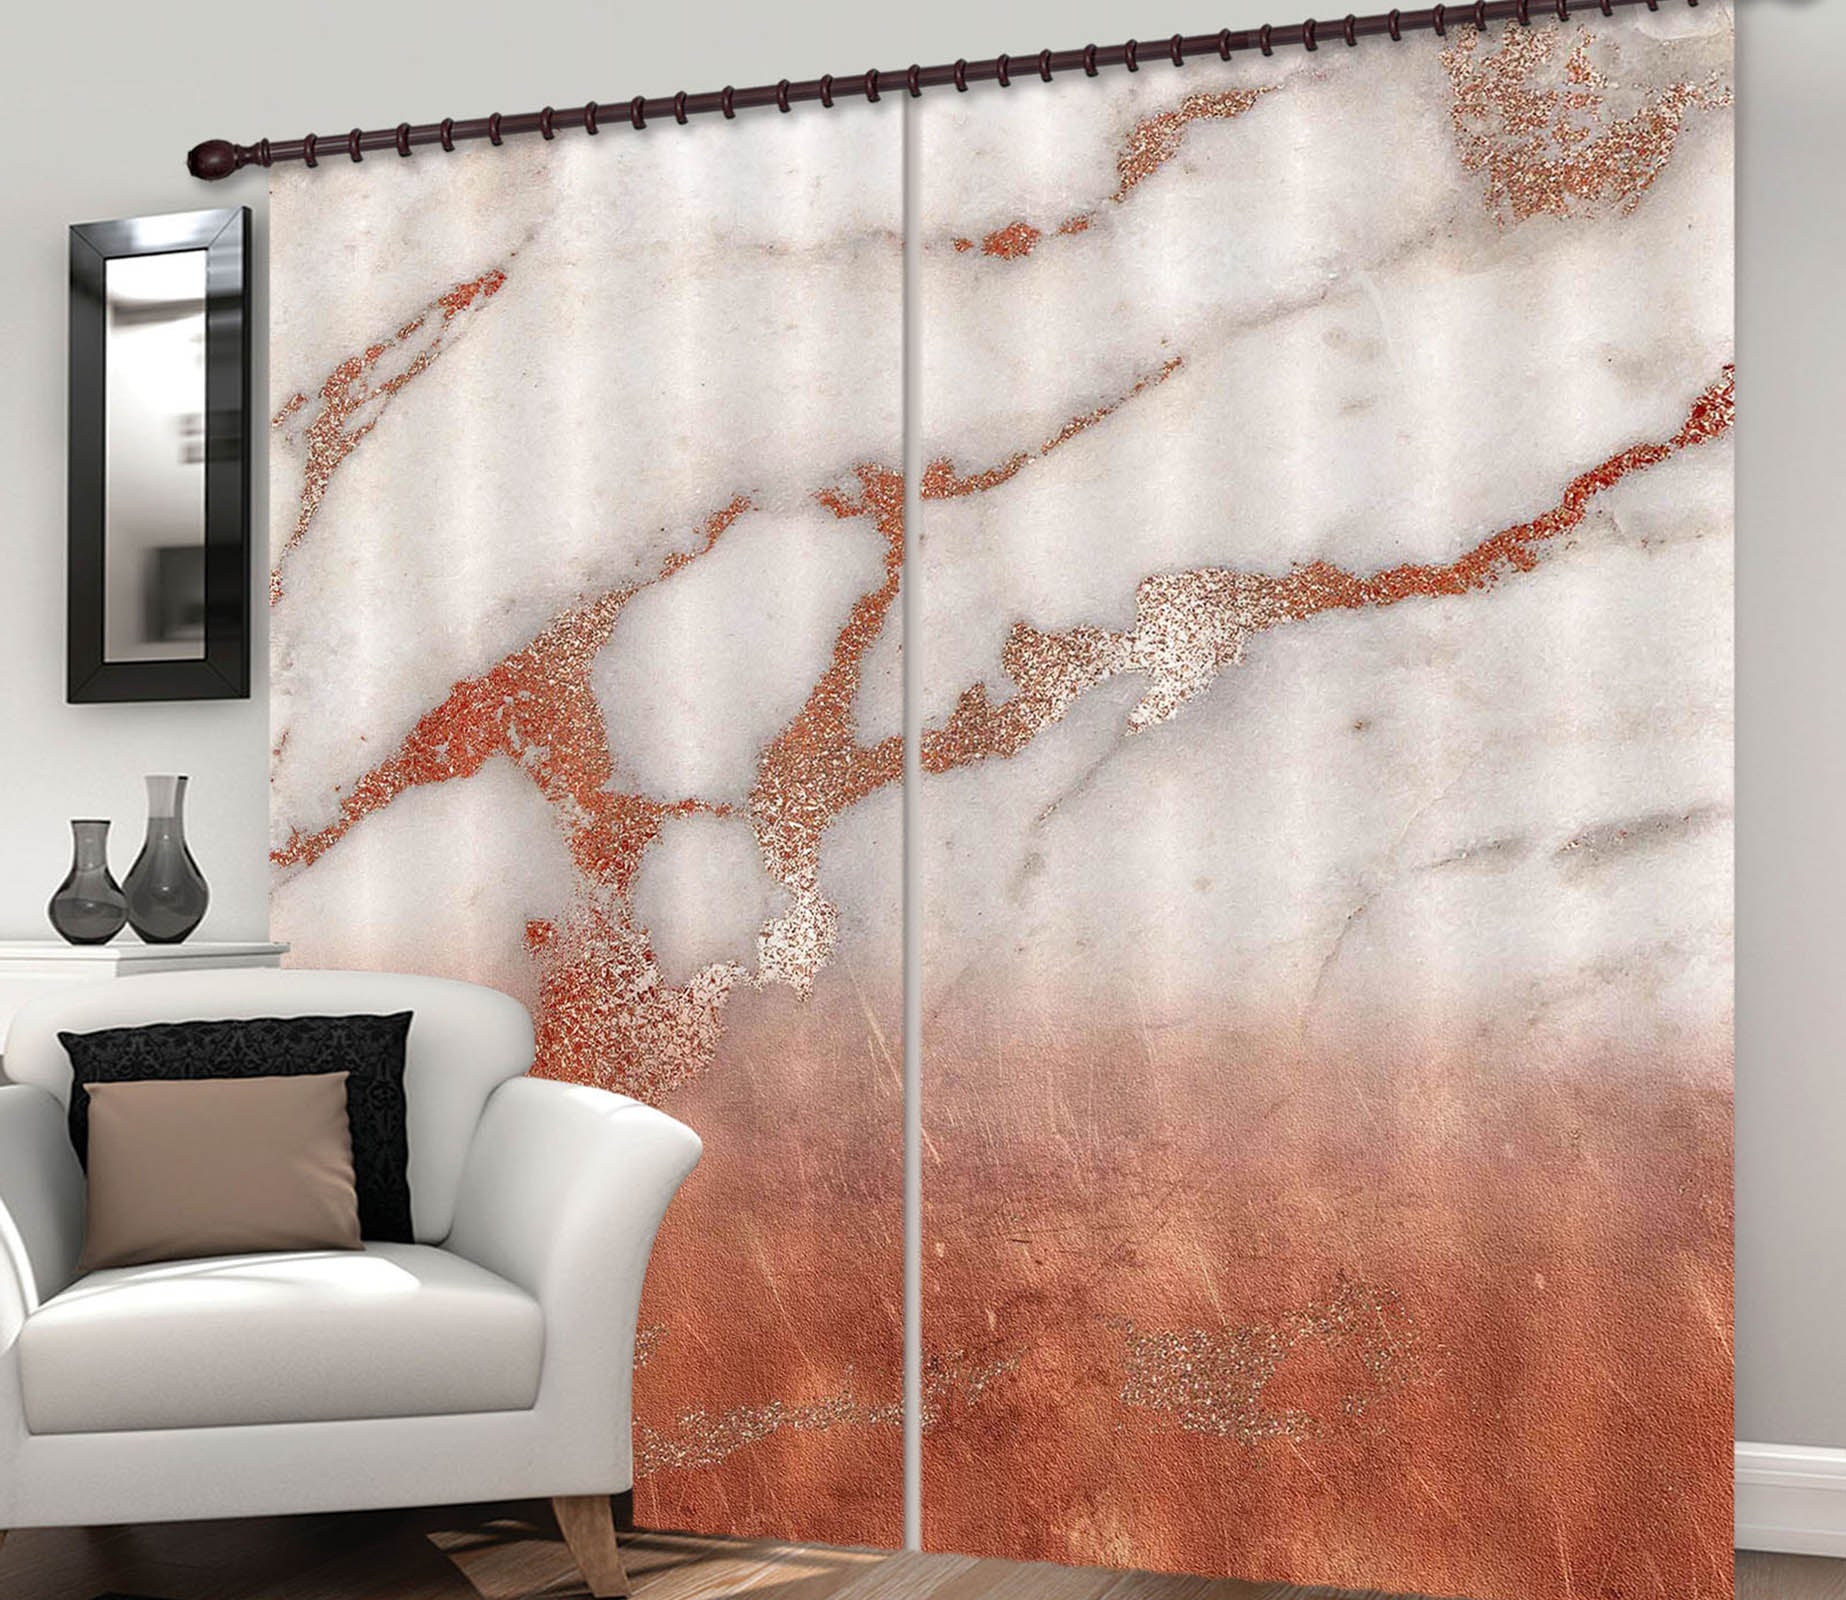 3D Red Gold Marble 190 Uta Naumann Curtain Curtains Drapes